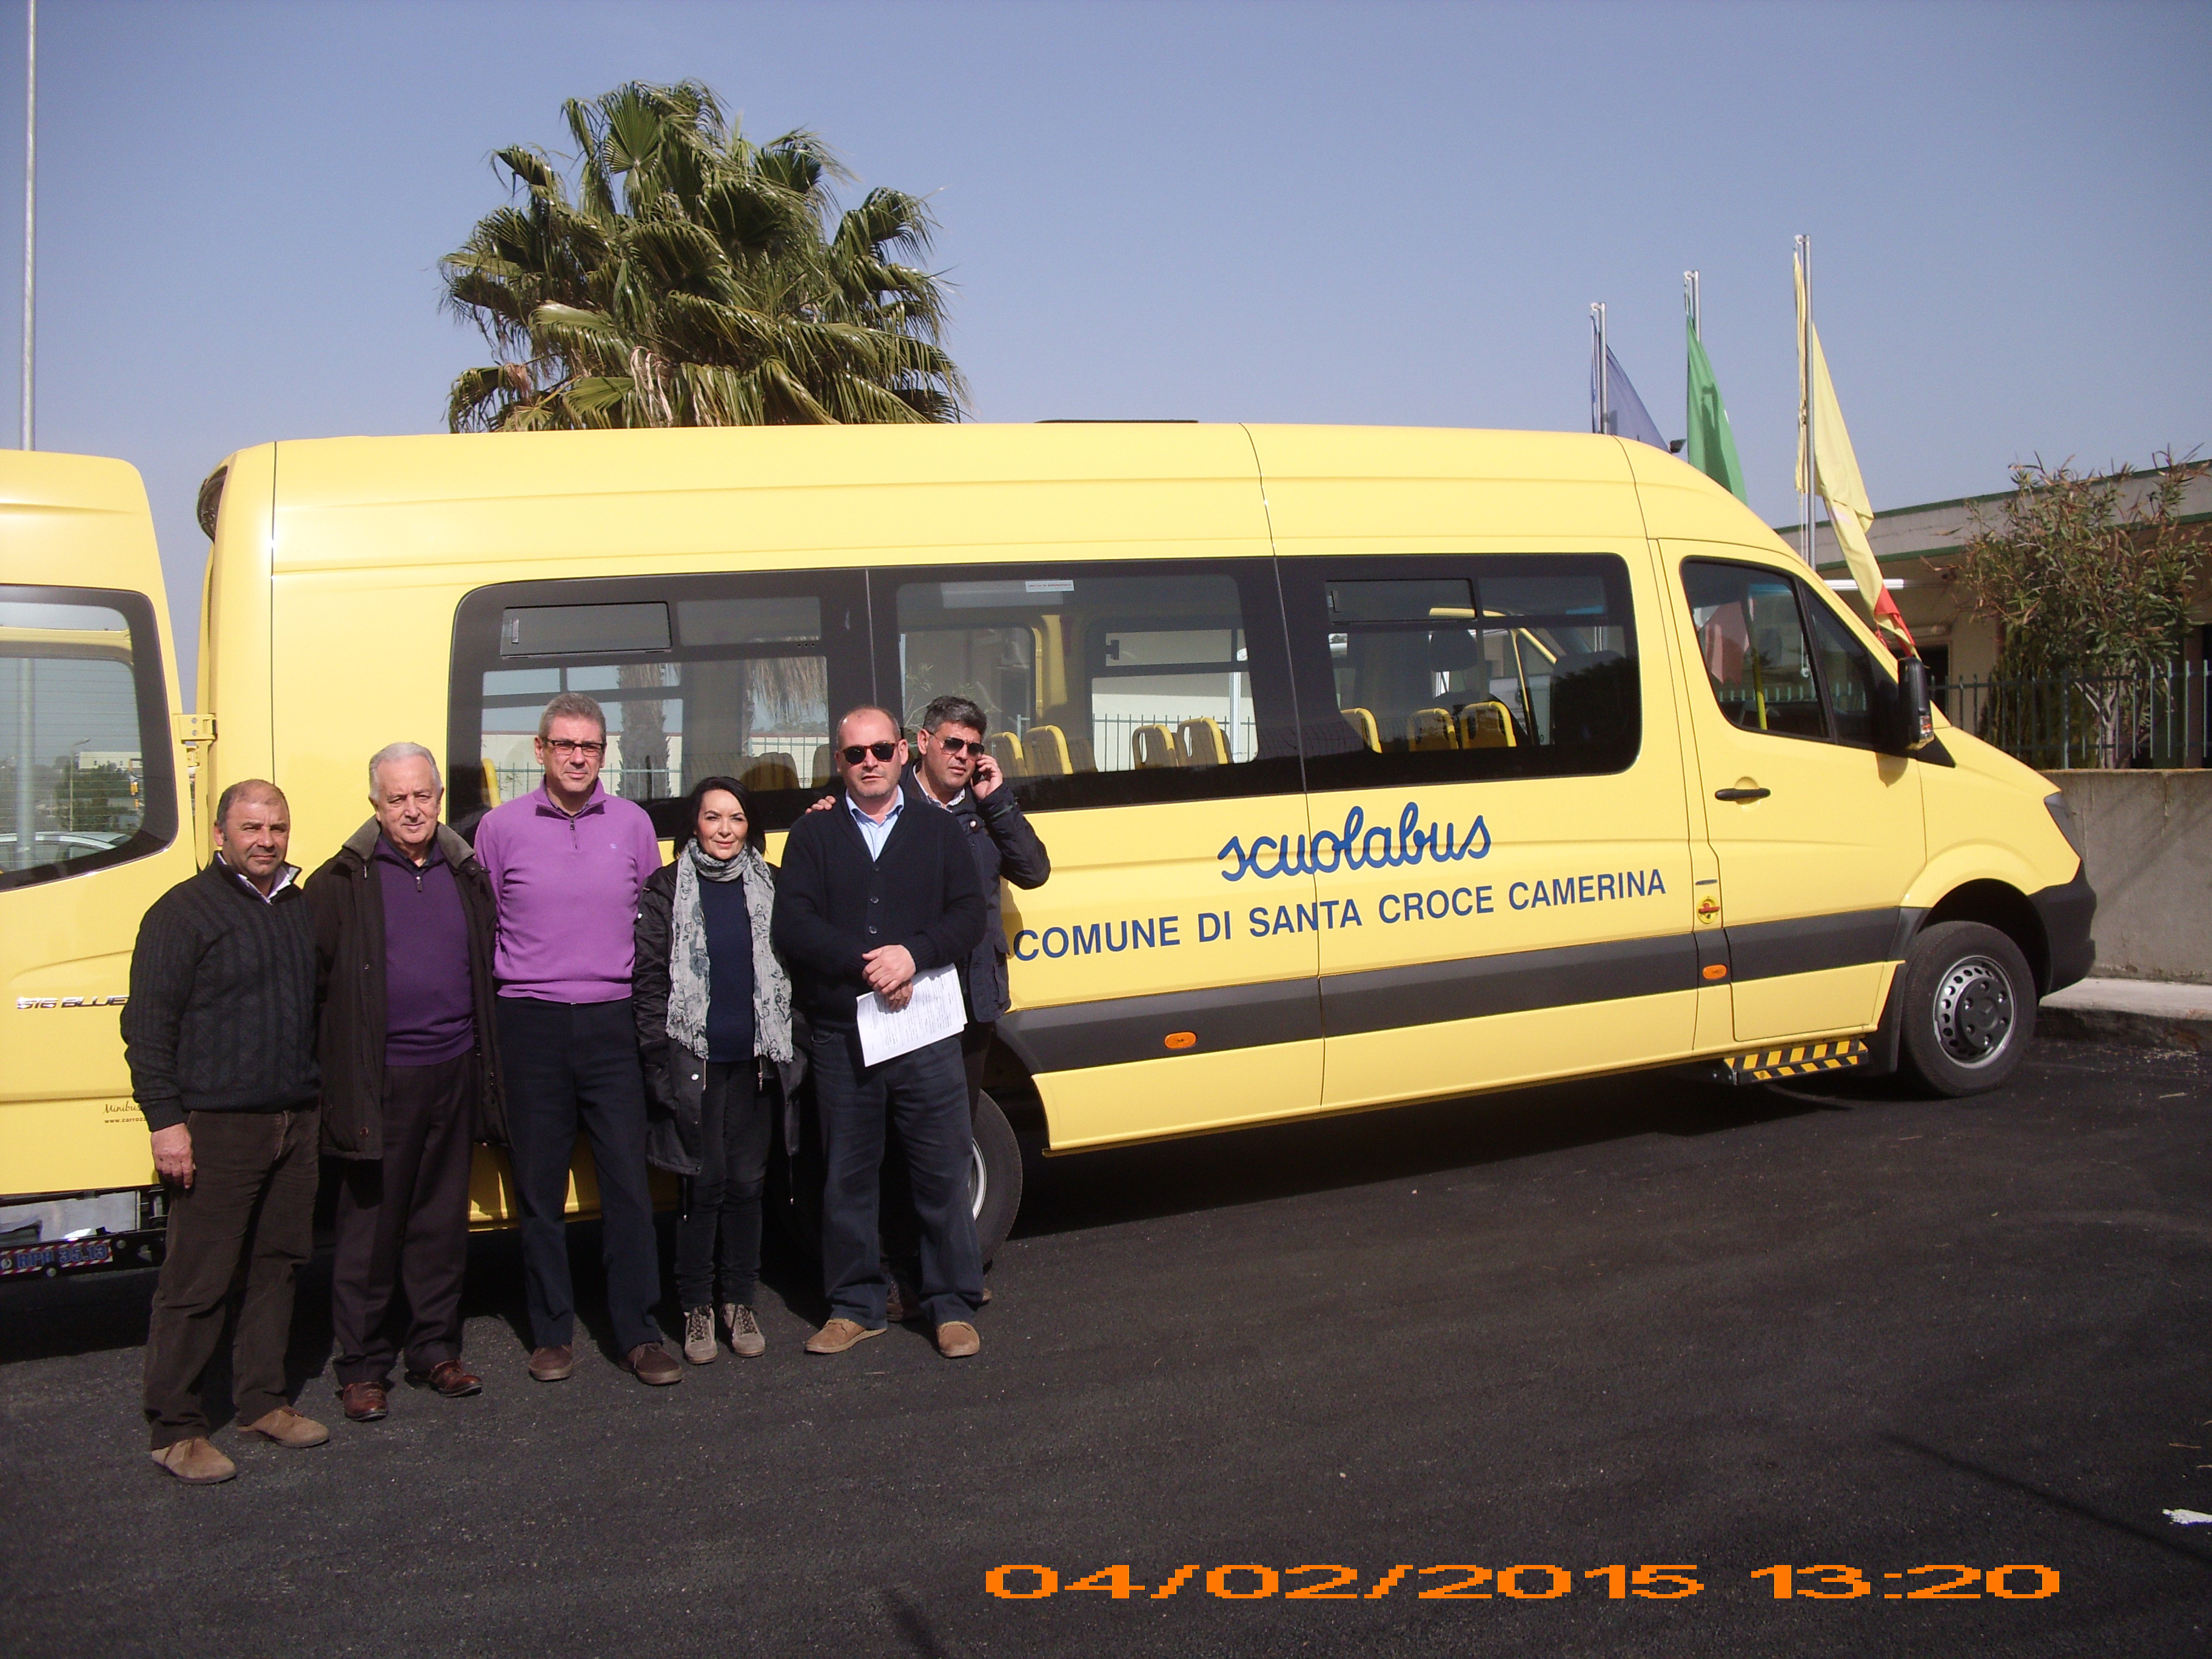  Un nuovo scuolabus per gli studenti: al Comune è costato 72mila euro